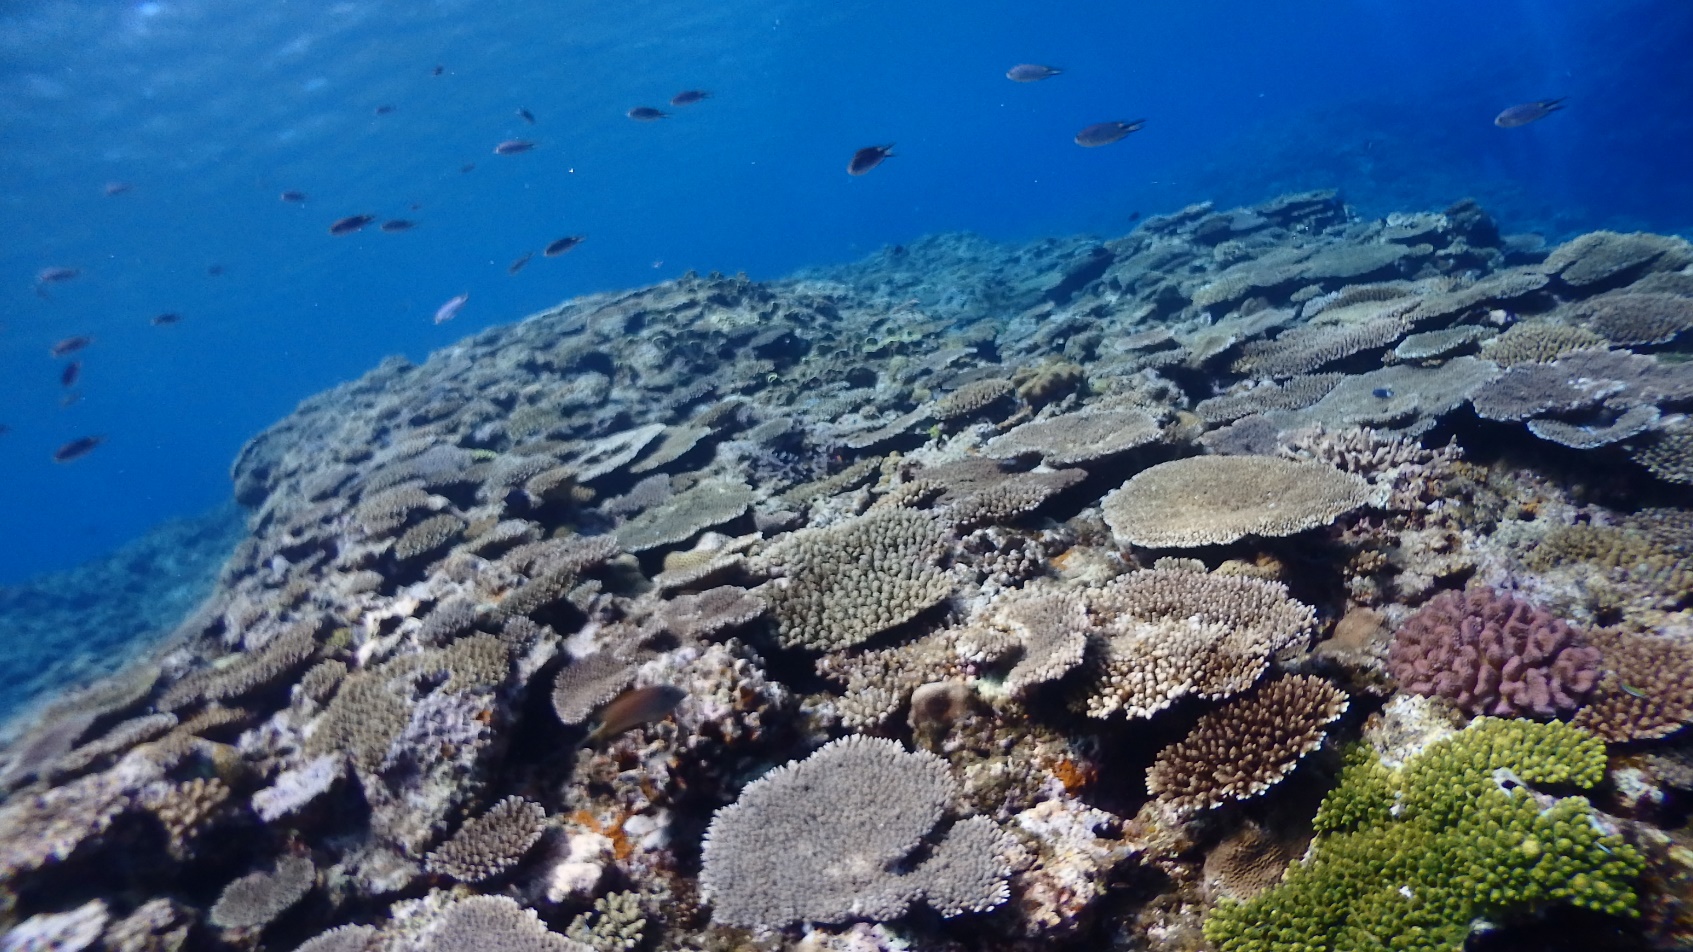 サンゴ礁の写真